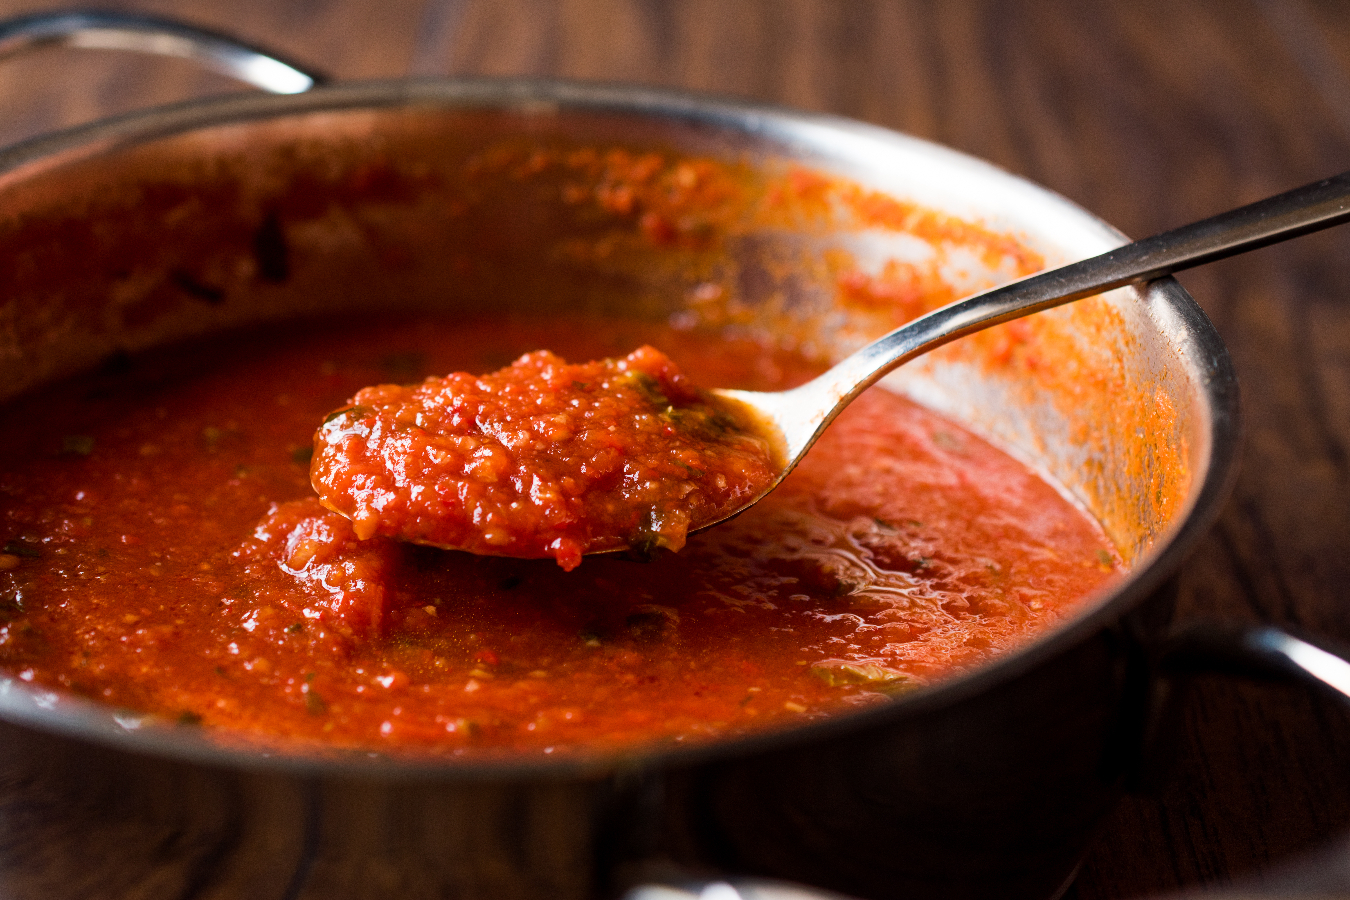 O sofrito de tomate é um refogado usado como base para muitos pratos na culinária mediterrânea e latina